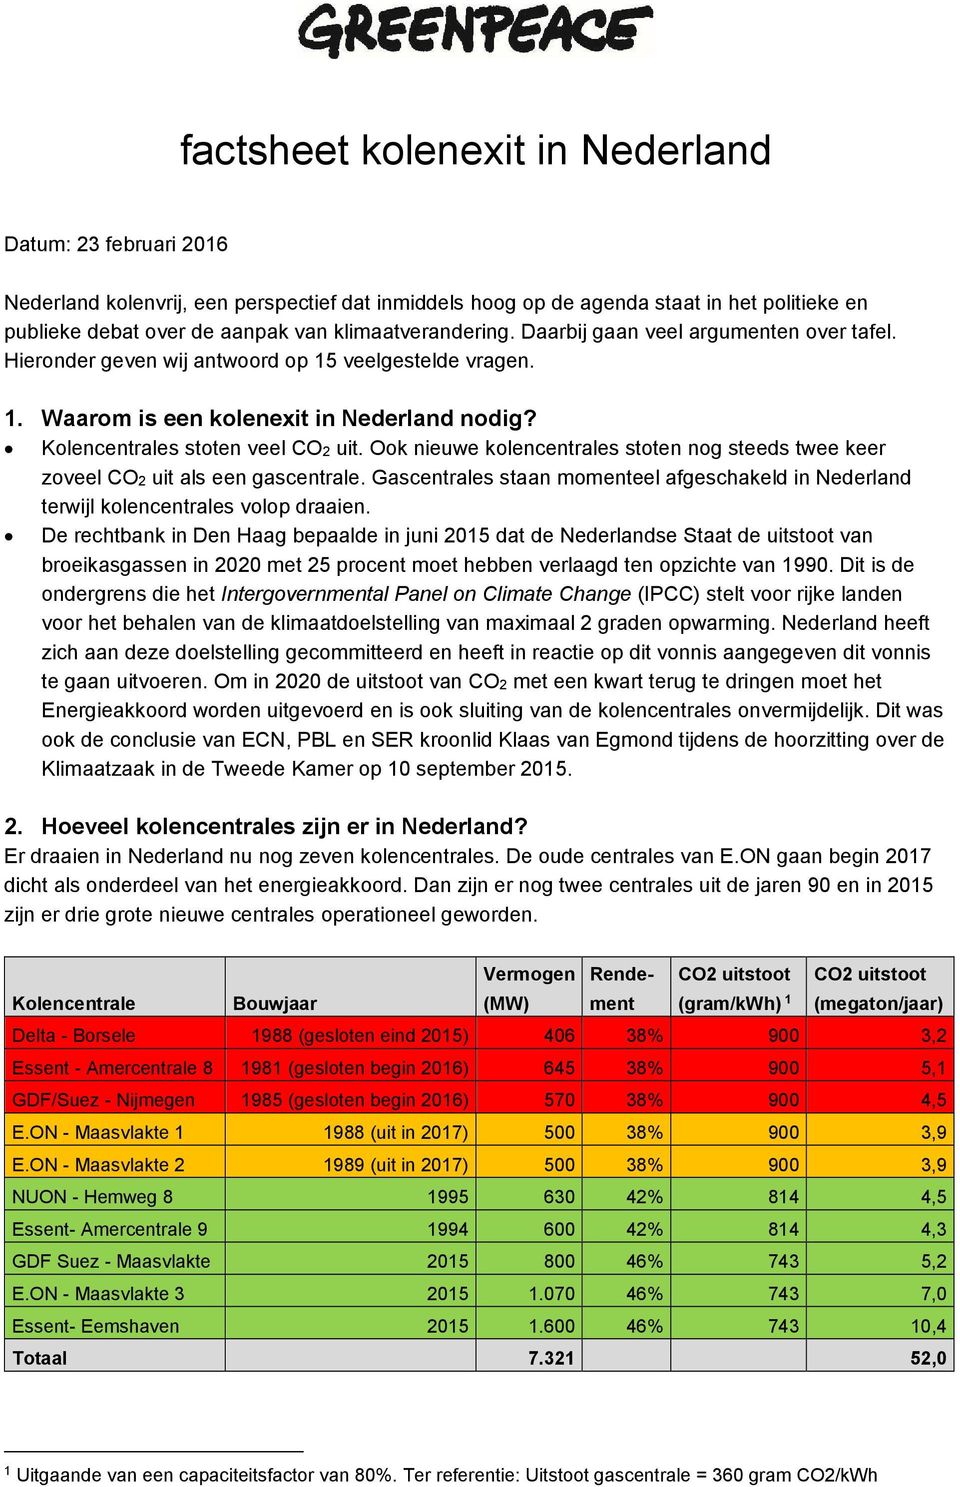 Ook nieuwe kolencentrales stoten nog steeds twee keer zoveel CO2 uit als een gascentrale. Gascentrales staan momenteel afgeschakeld in Nederland terwijl kolencentrales volop draaien.